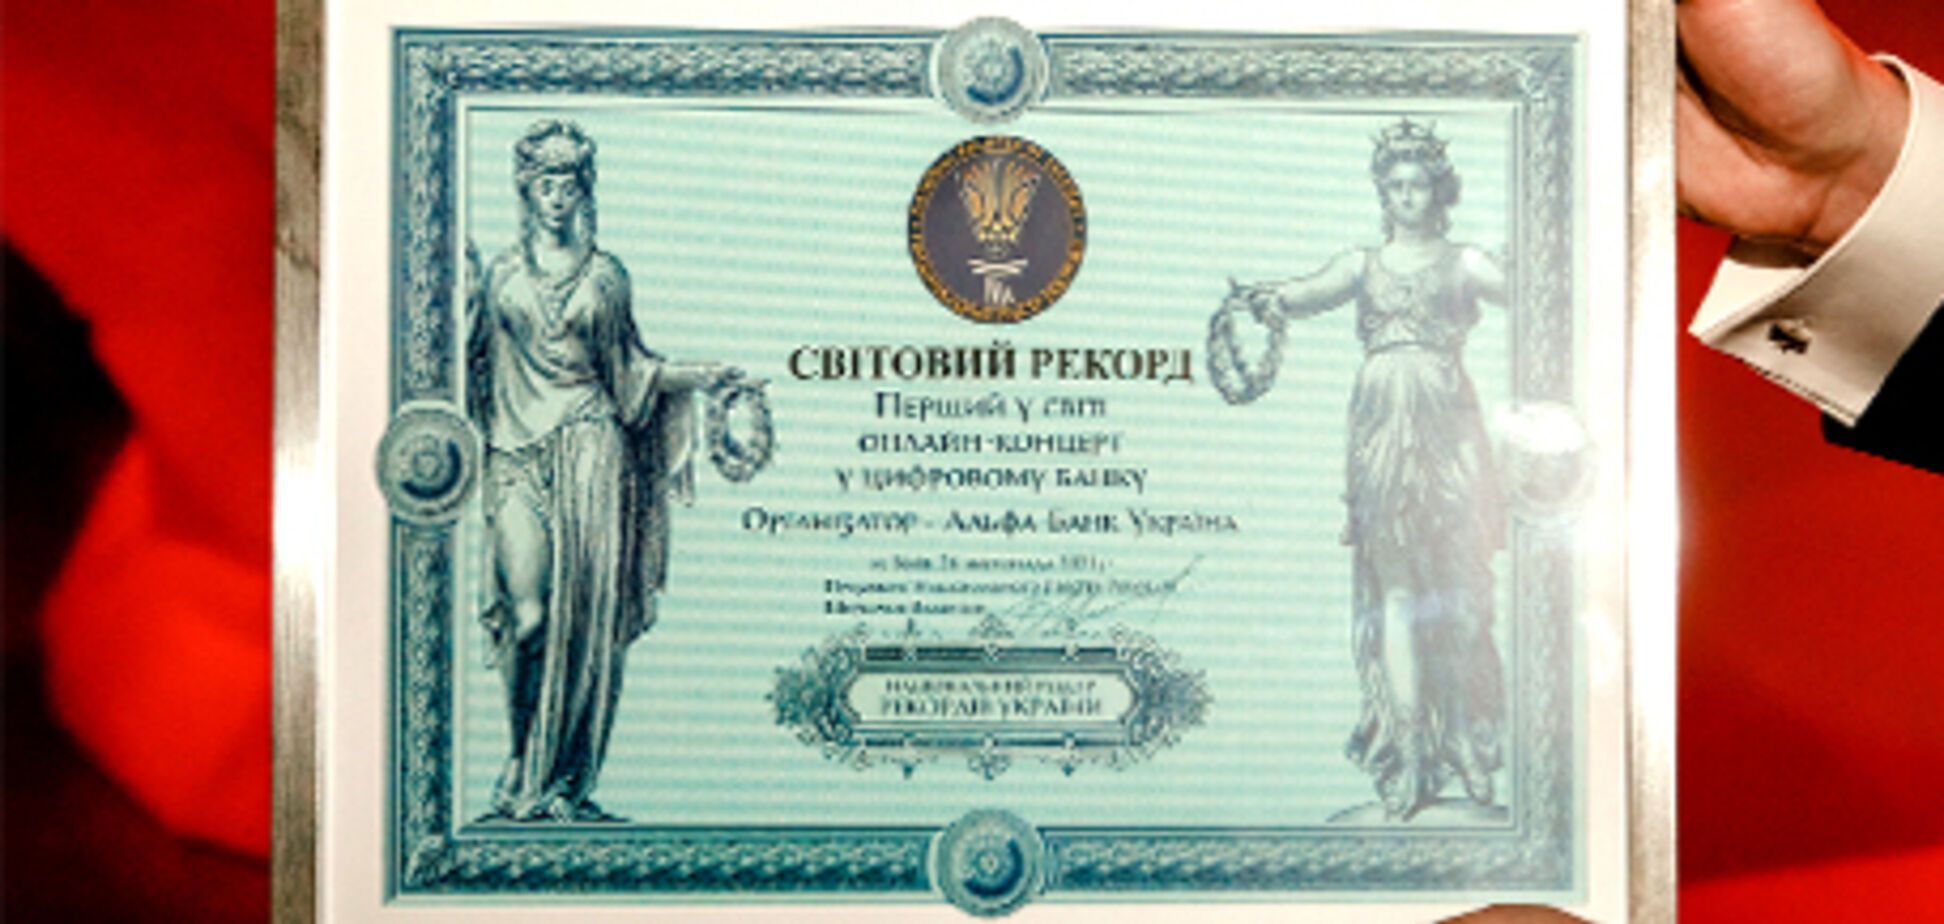 Мировой рекорд: Альфа-Банк Украина провел первый в мире онлайн-концерт в цифровом банке